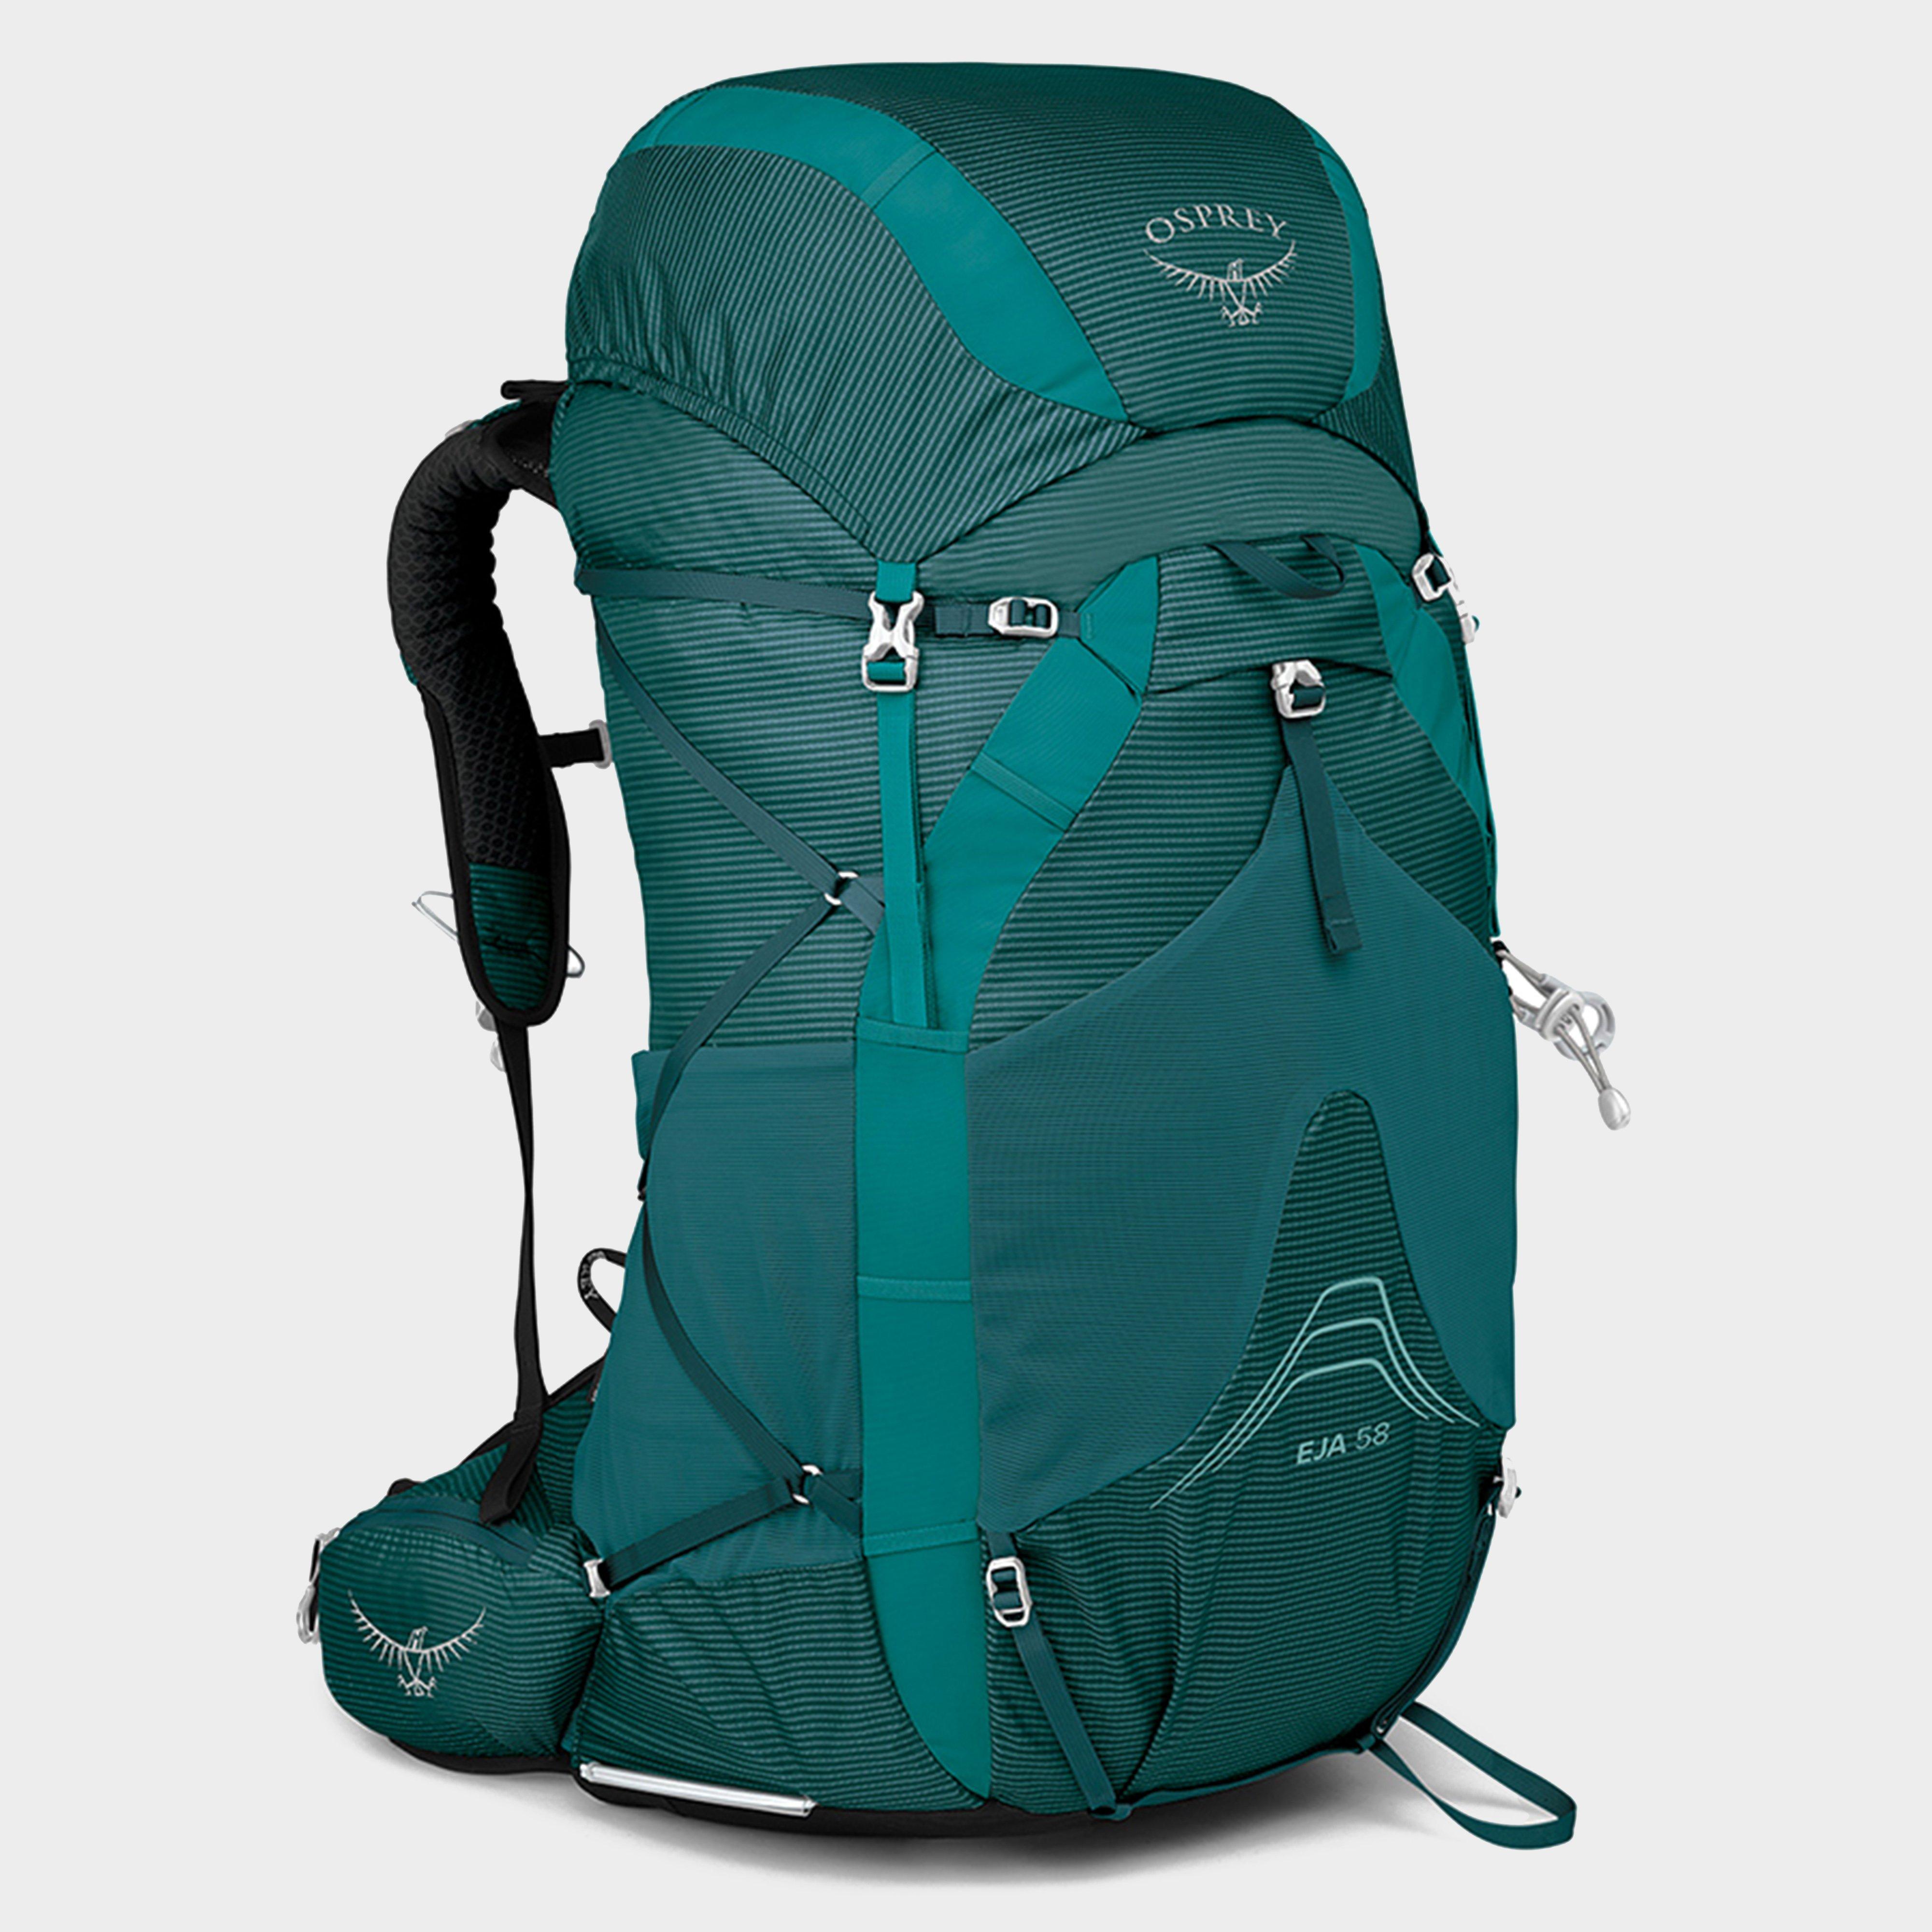 Osprey Eja Ii 58l Backpack - Green/green  Green/green